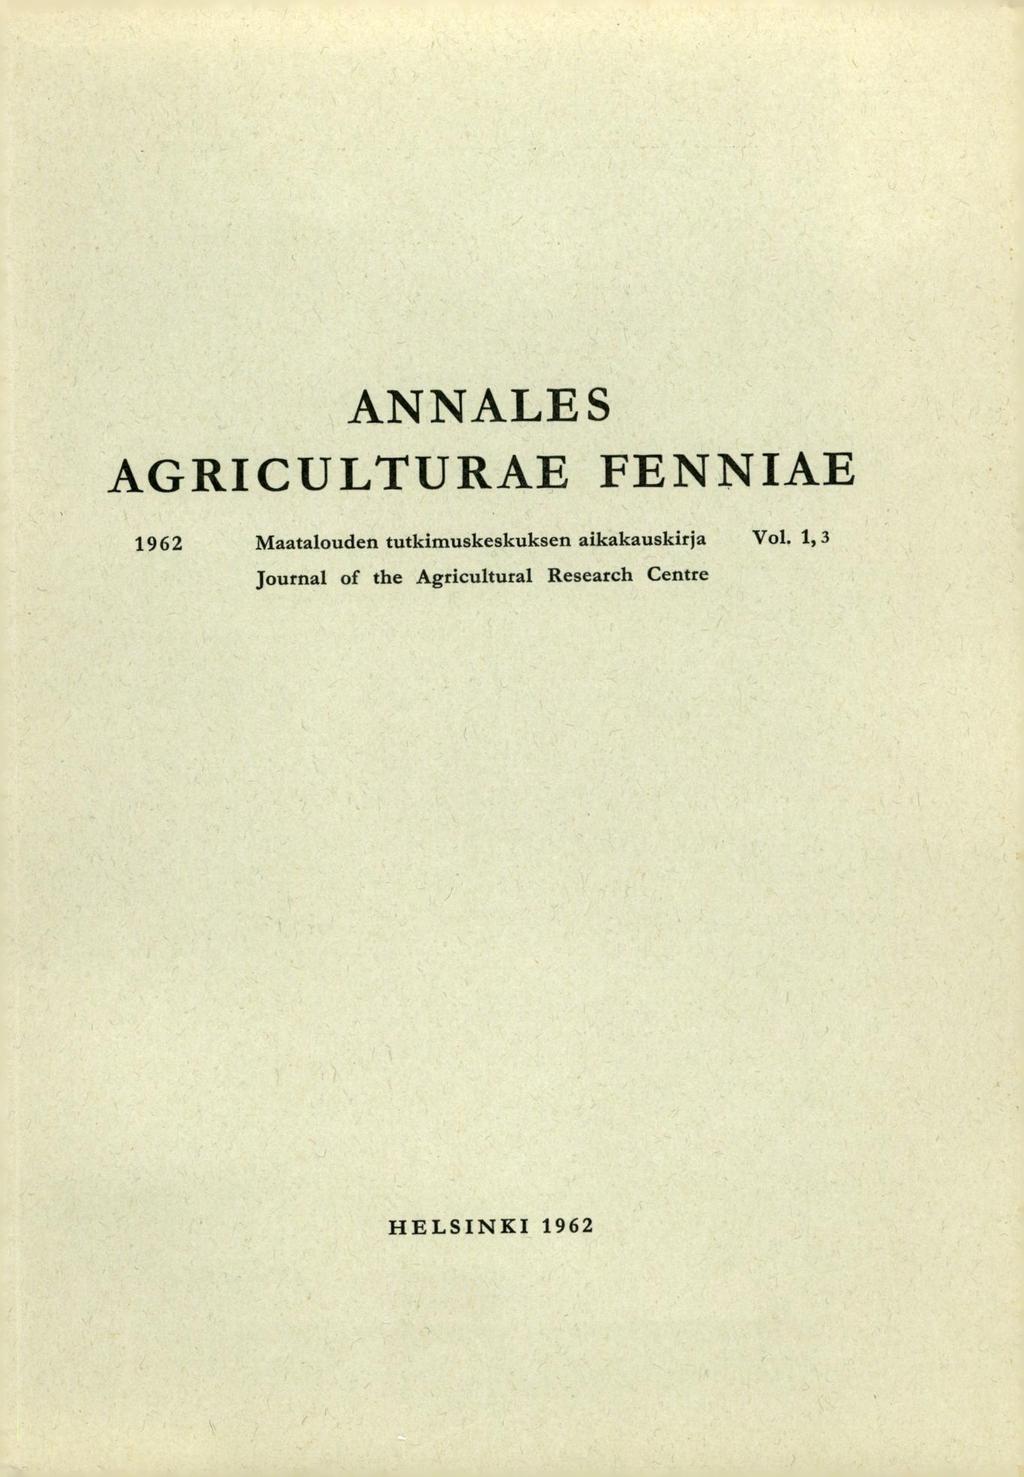 ANNALES AGRICULTURAE FENNIAE 1962 Maatalouden tutkimuskeskuksen